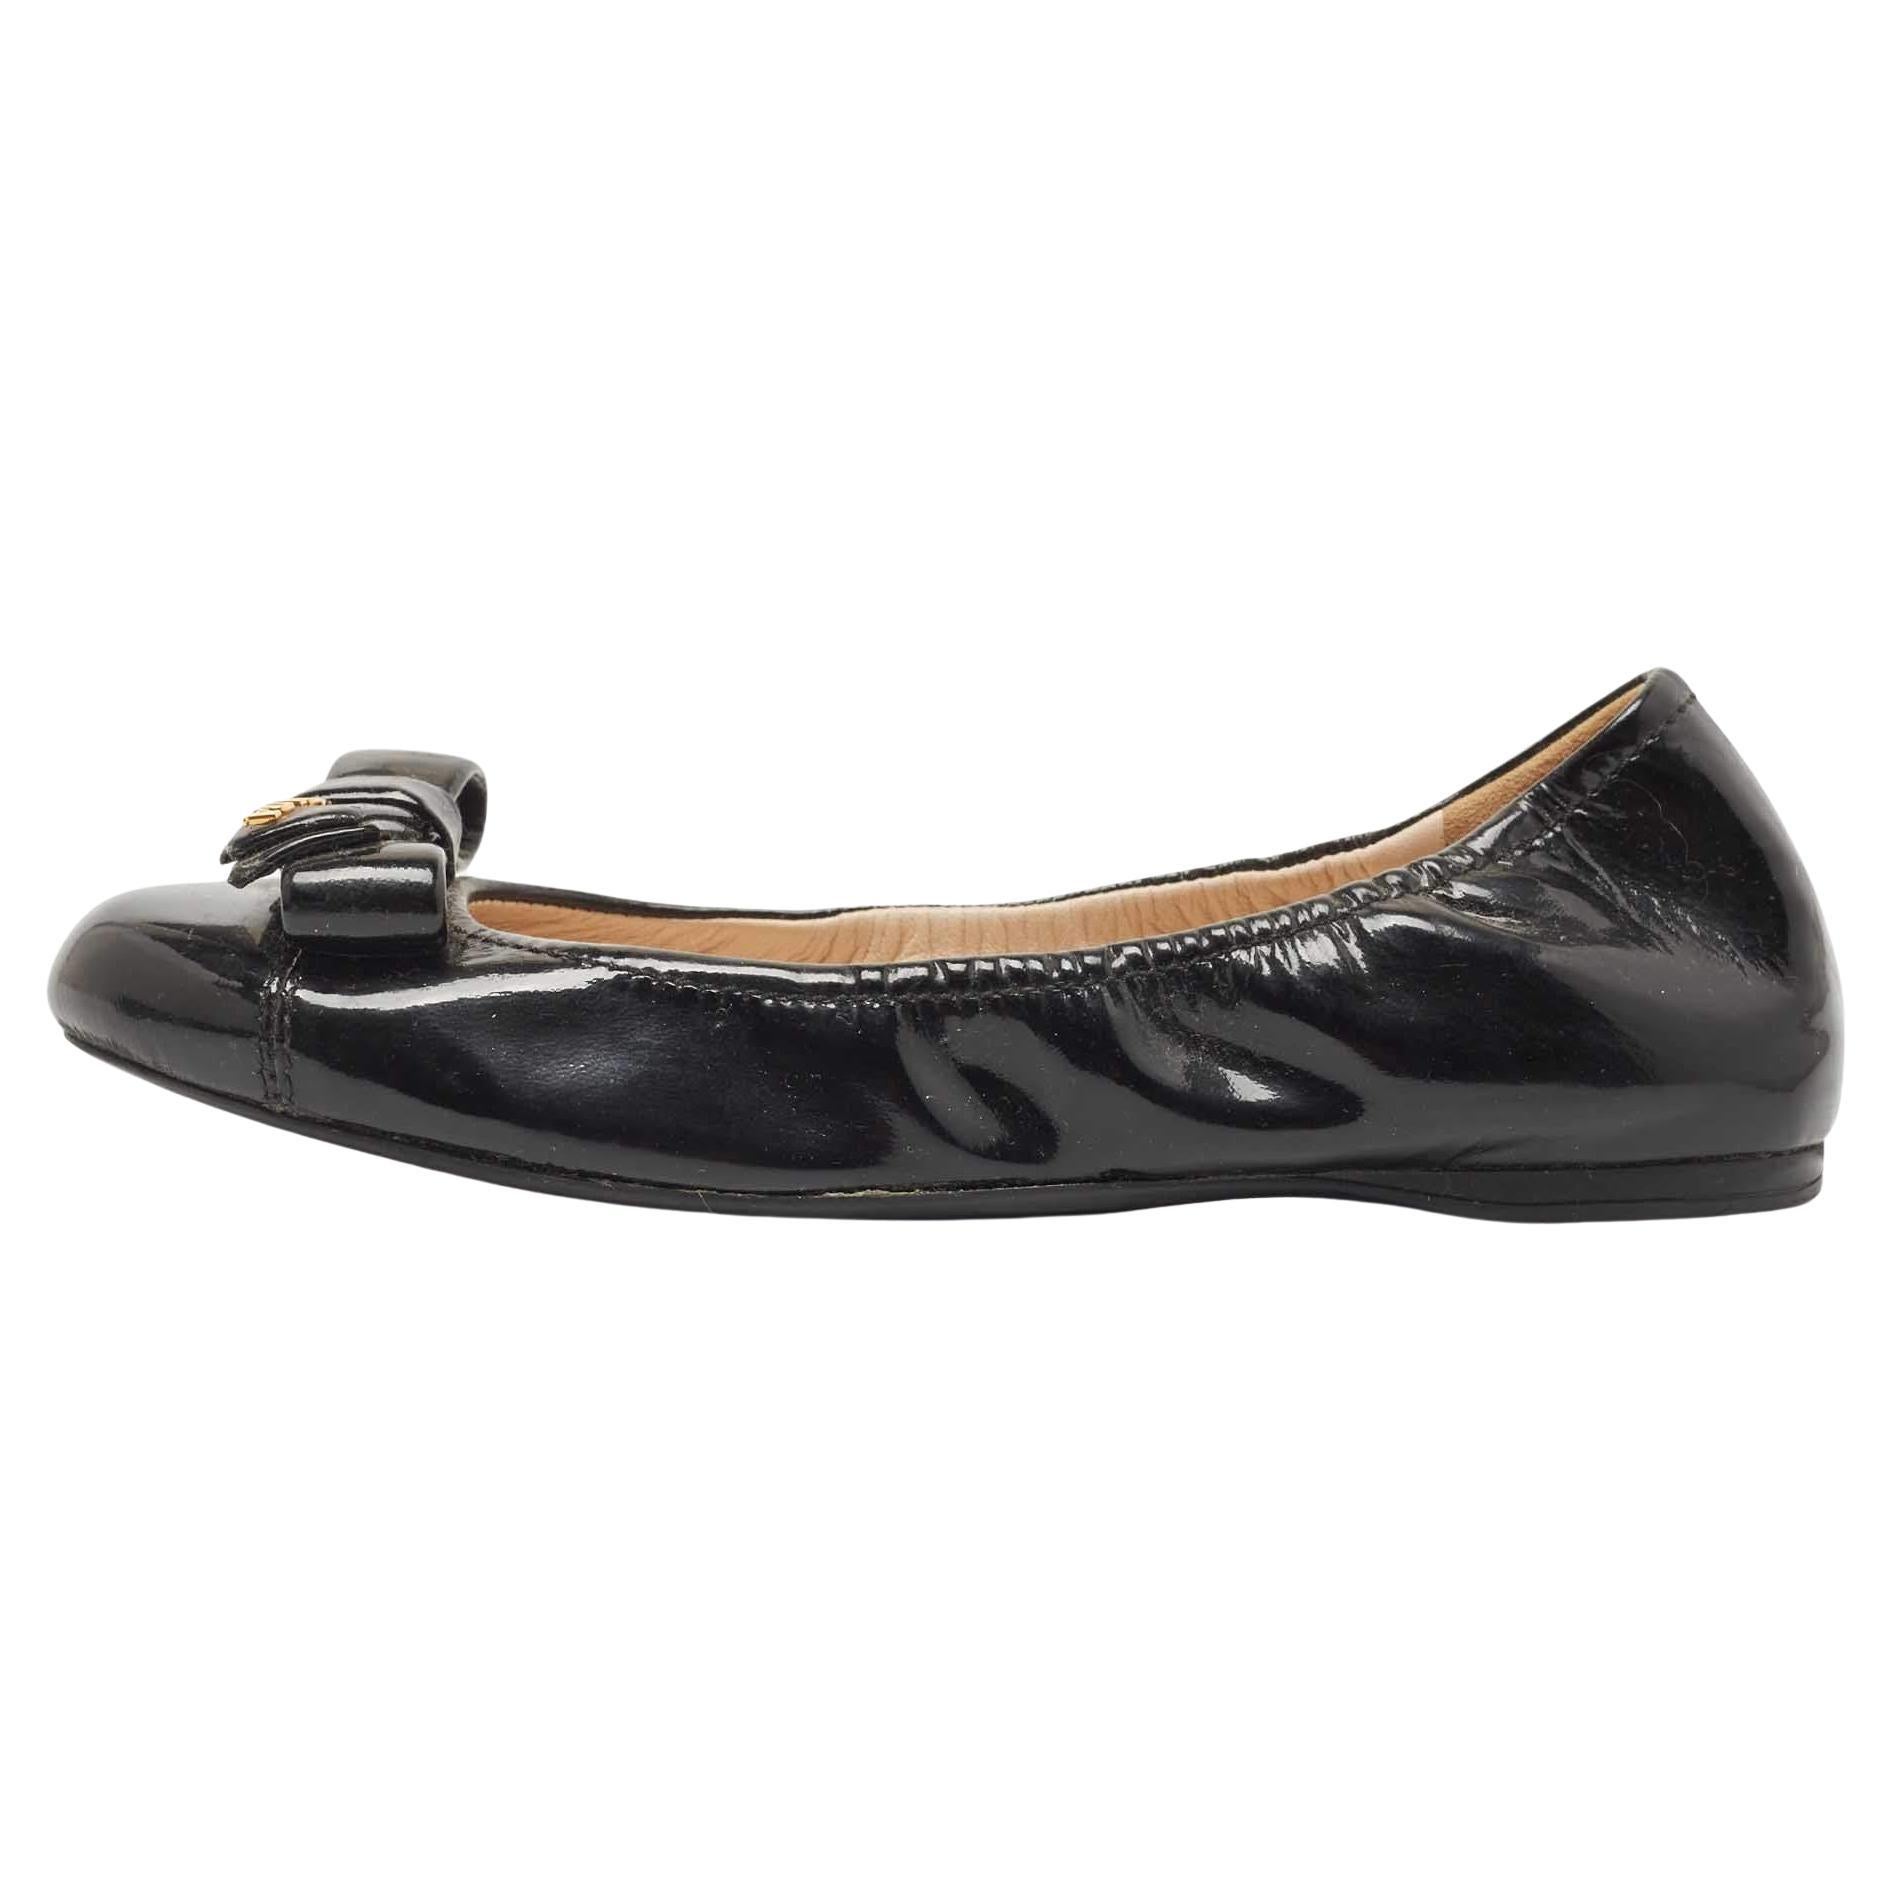 Vintage Mario Valentino Shoes Flats Soft Leather Brown Women’s Sz 8.5 Unique